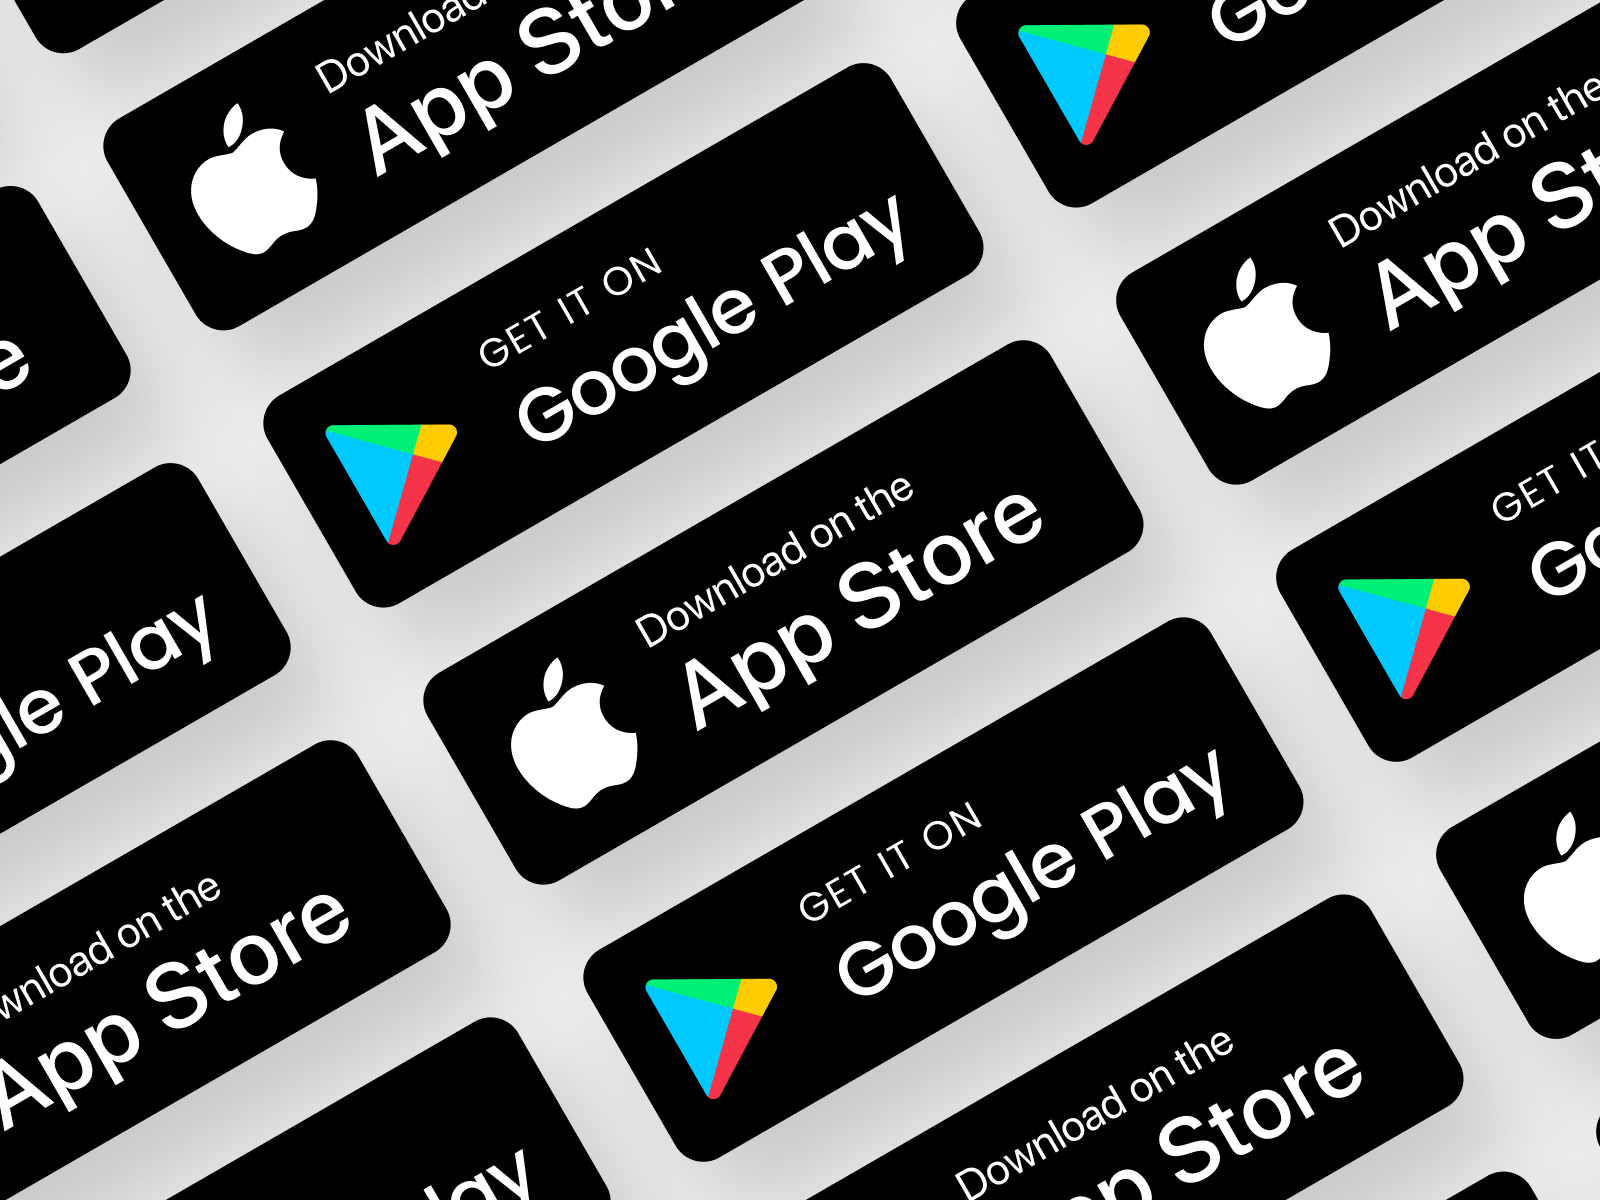 Гугл плей. Бейджи редакторов Google Play. Доступно в app Store и Google Play. Кнопки для скачивания приложений гугл плей и апстор. Гугл маркет на телевизор